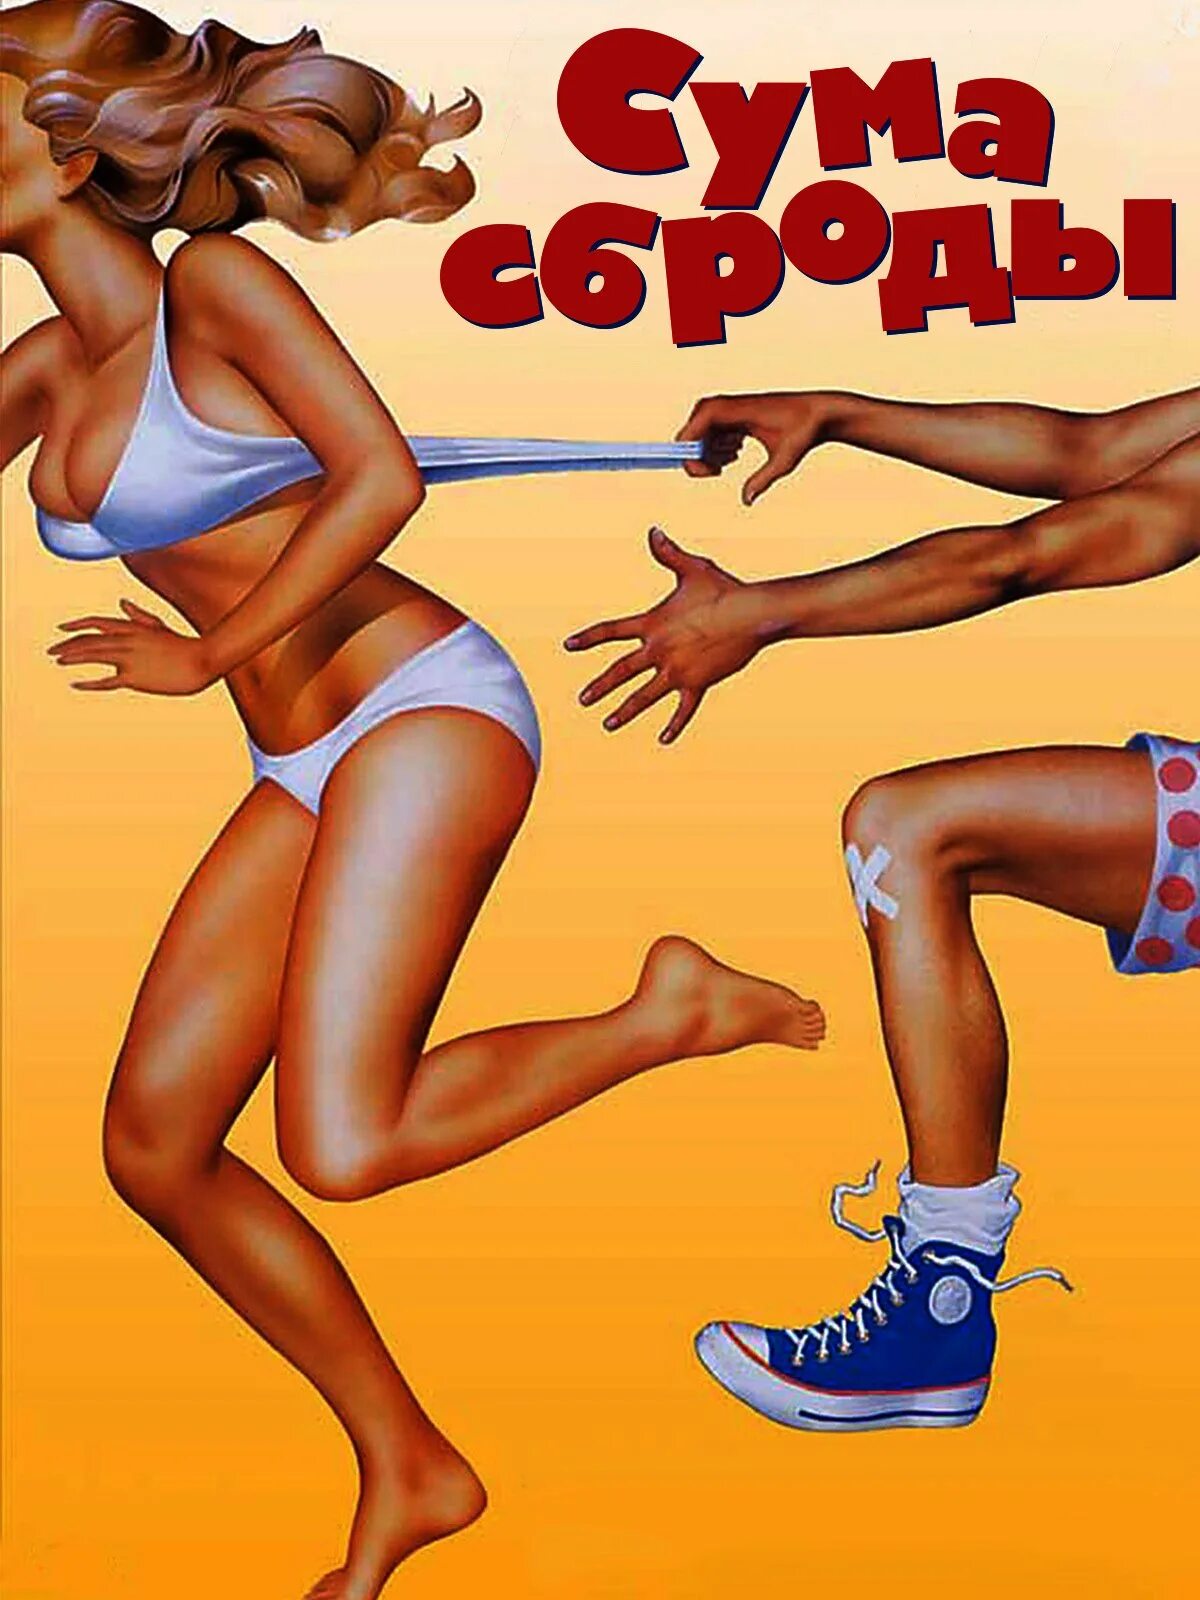 Сумасброд в юбке 8 букв. Постеры сумасброды - Screwballs (1983).